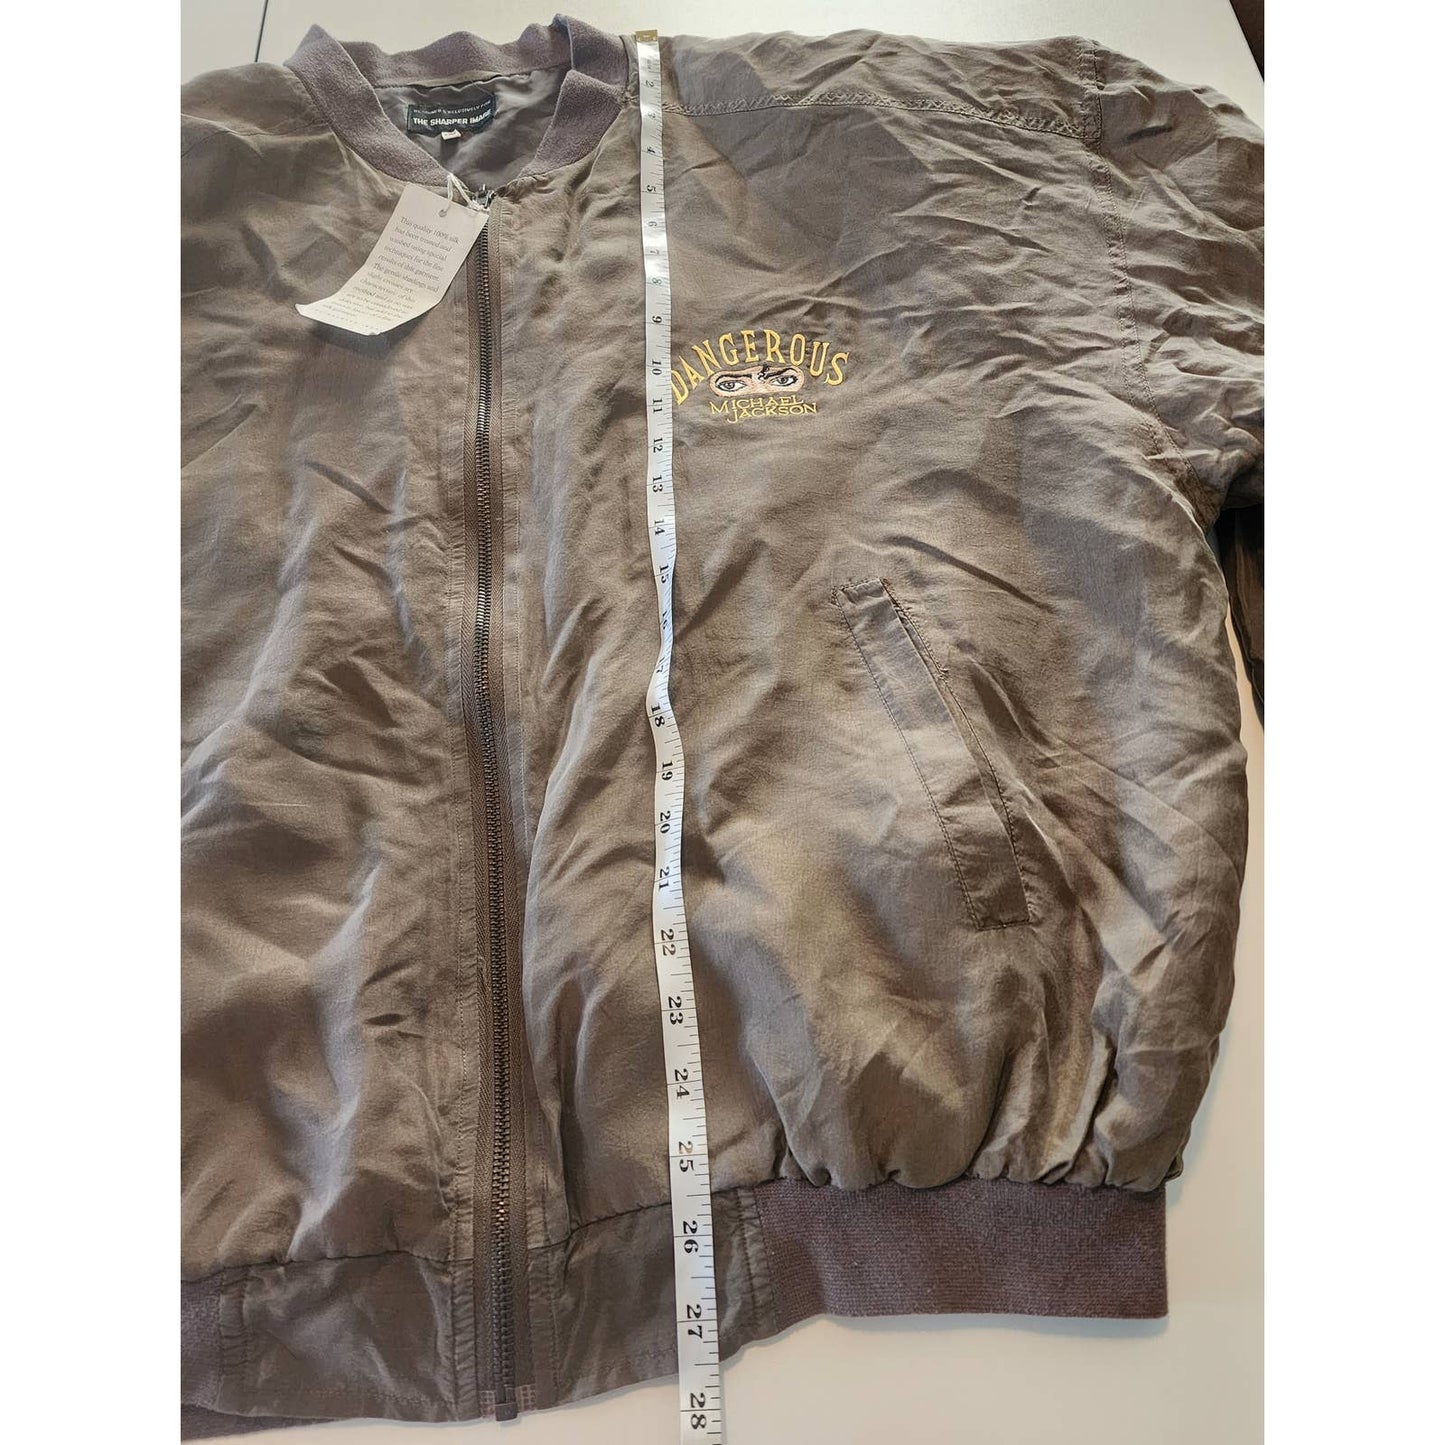 Vintage Michael Jackson Dangerous Tour Silk Jacket by Sharper Image Size XL